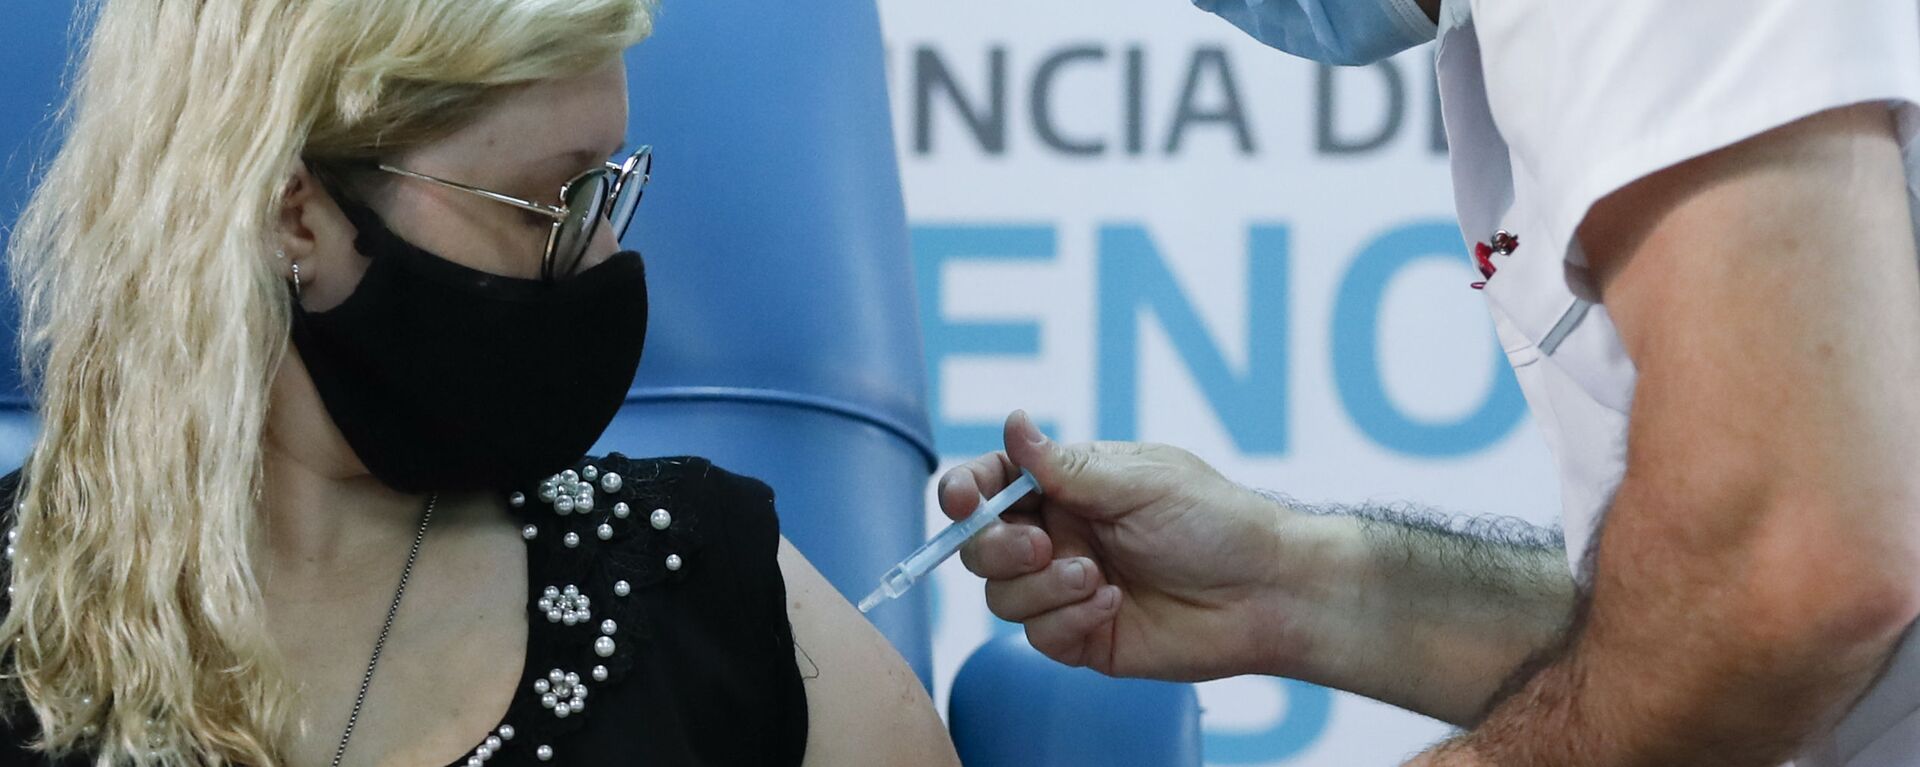 Una enfermera argentina recibe la vacuna Sputnik V durante la primera jornada de vacunación - Sputnik Mundo, 1920, 21.02.2021